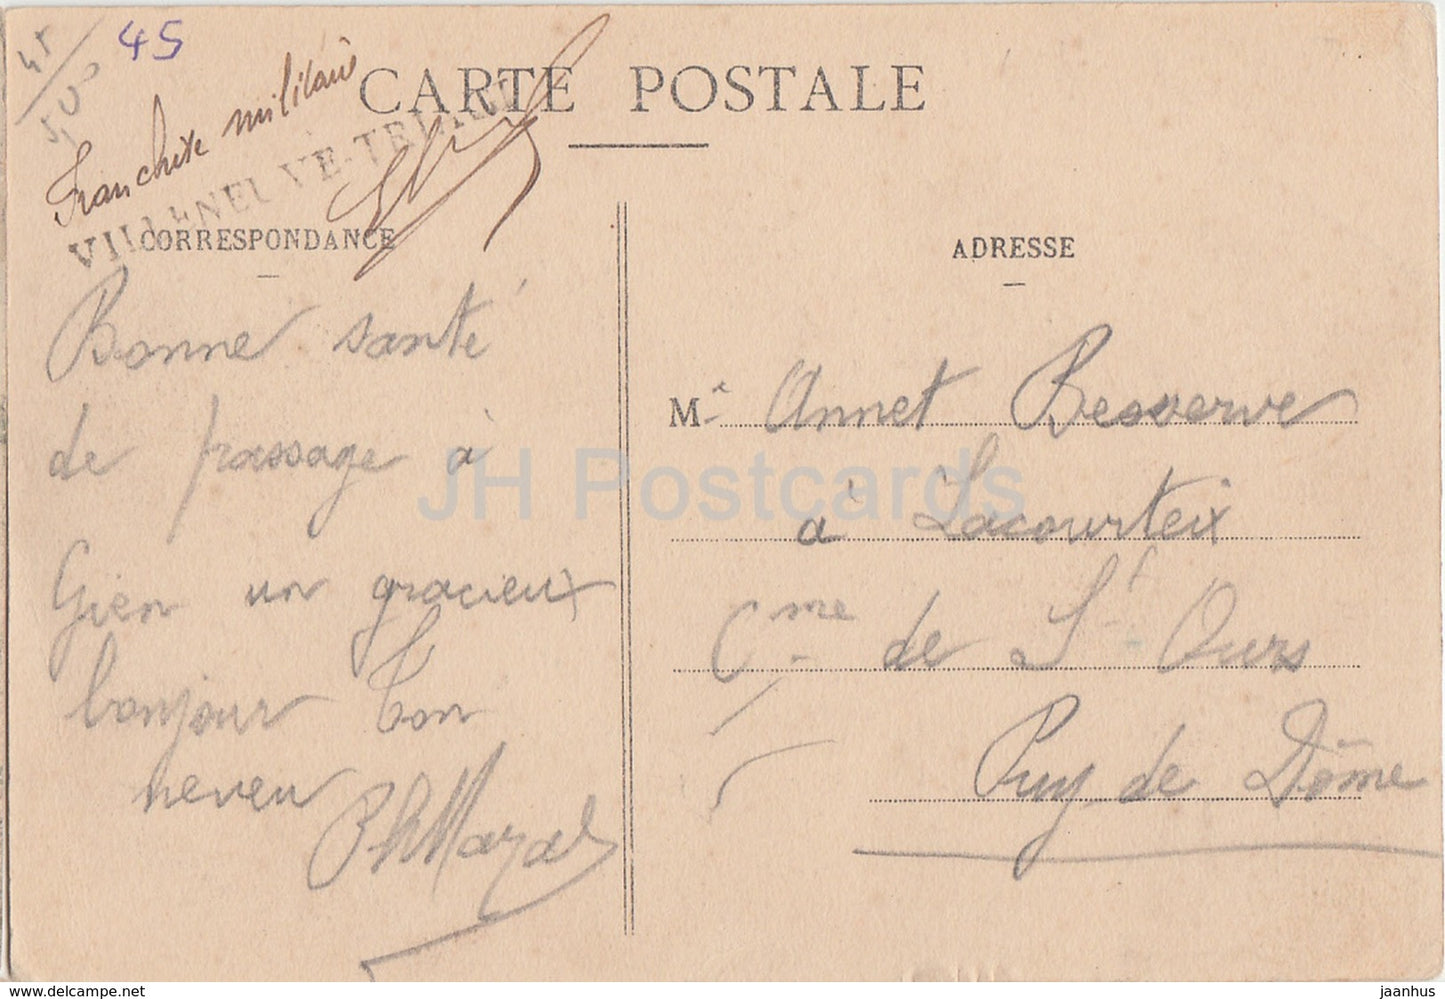 Gien - Le Chateau - château - 3 - carte postale ancienne - France - occasion